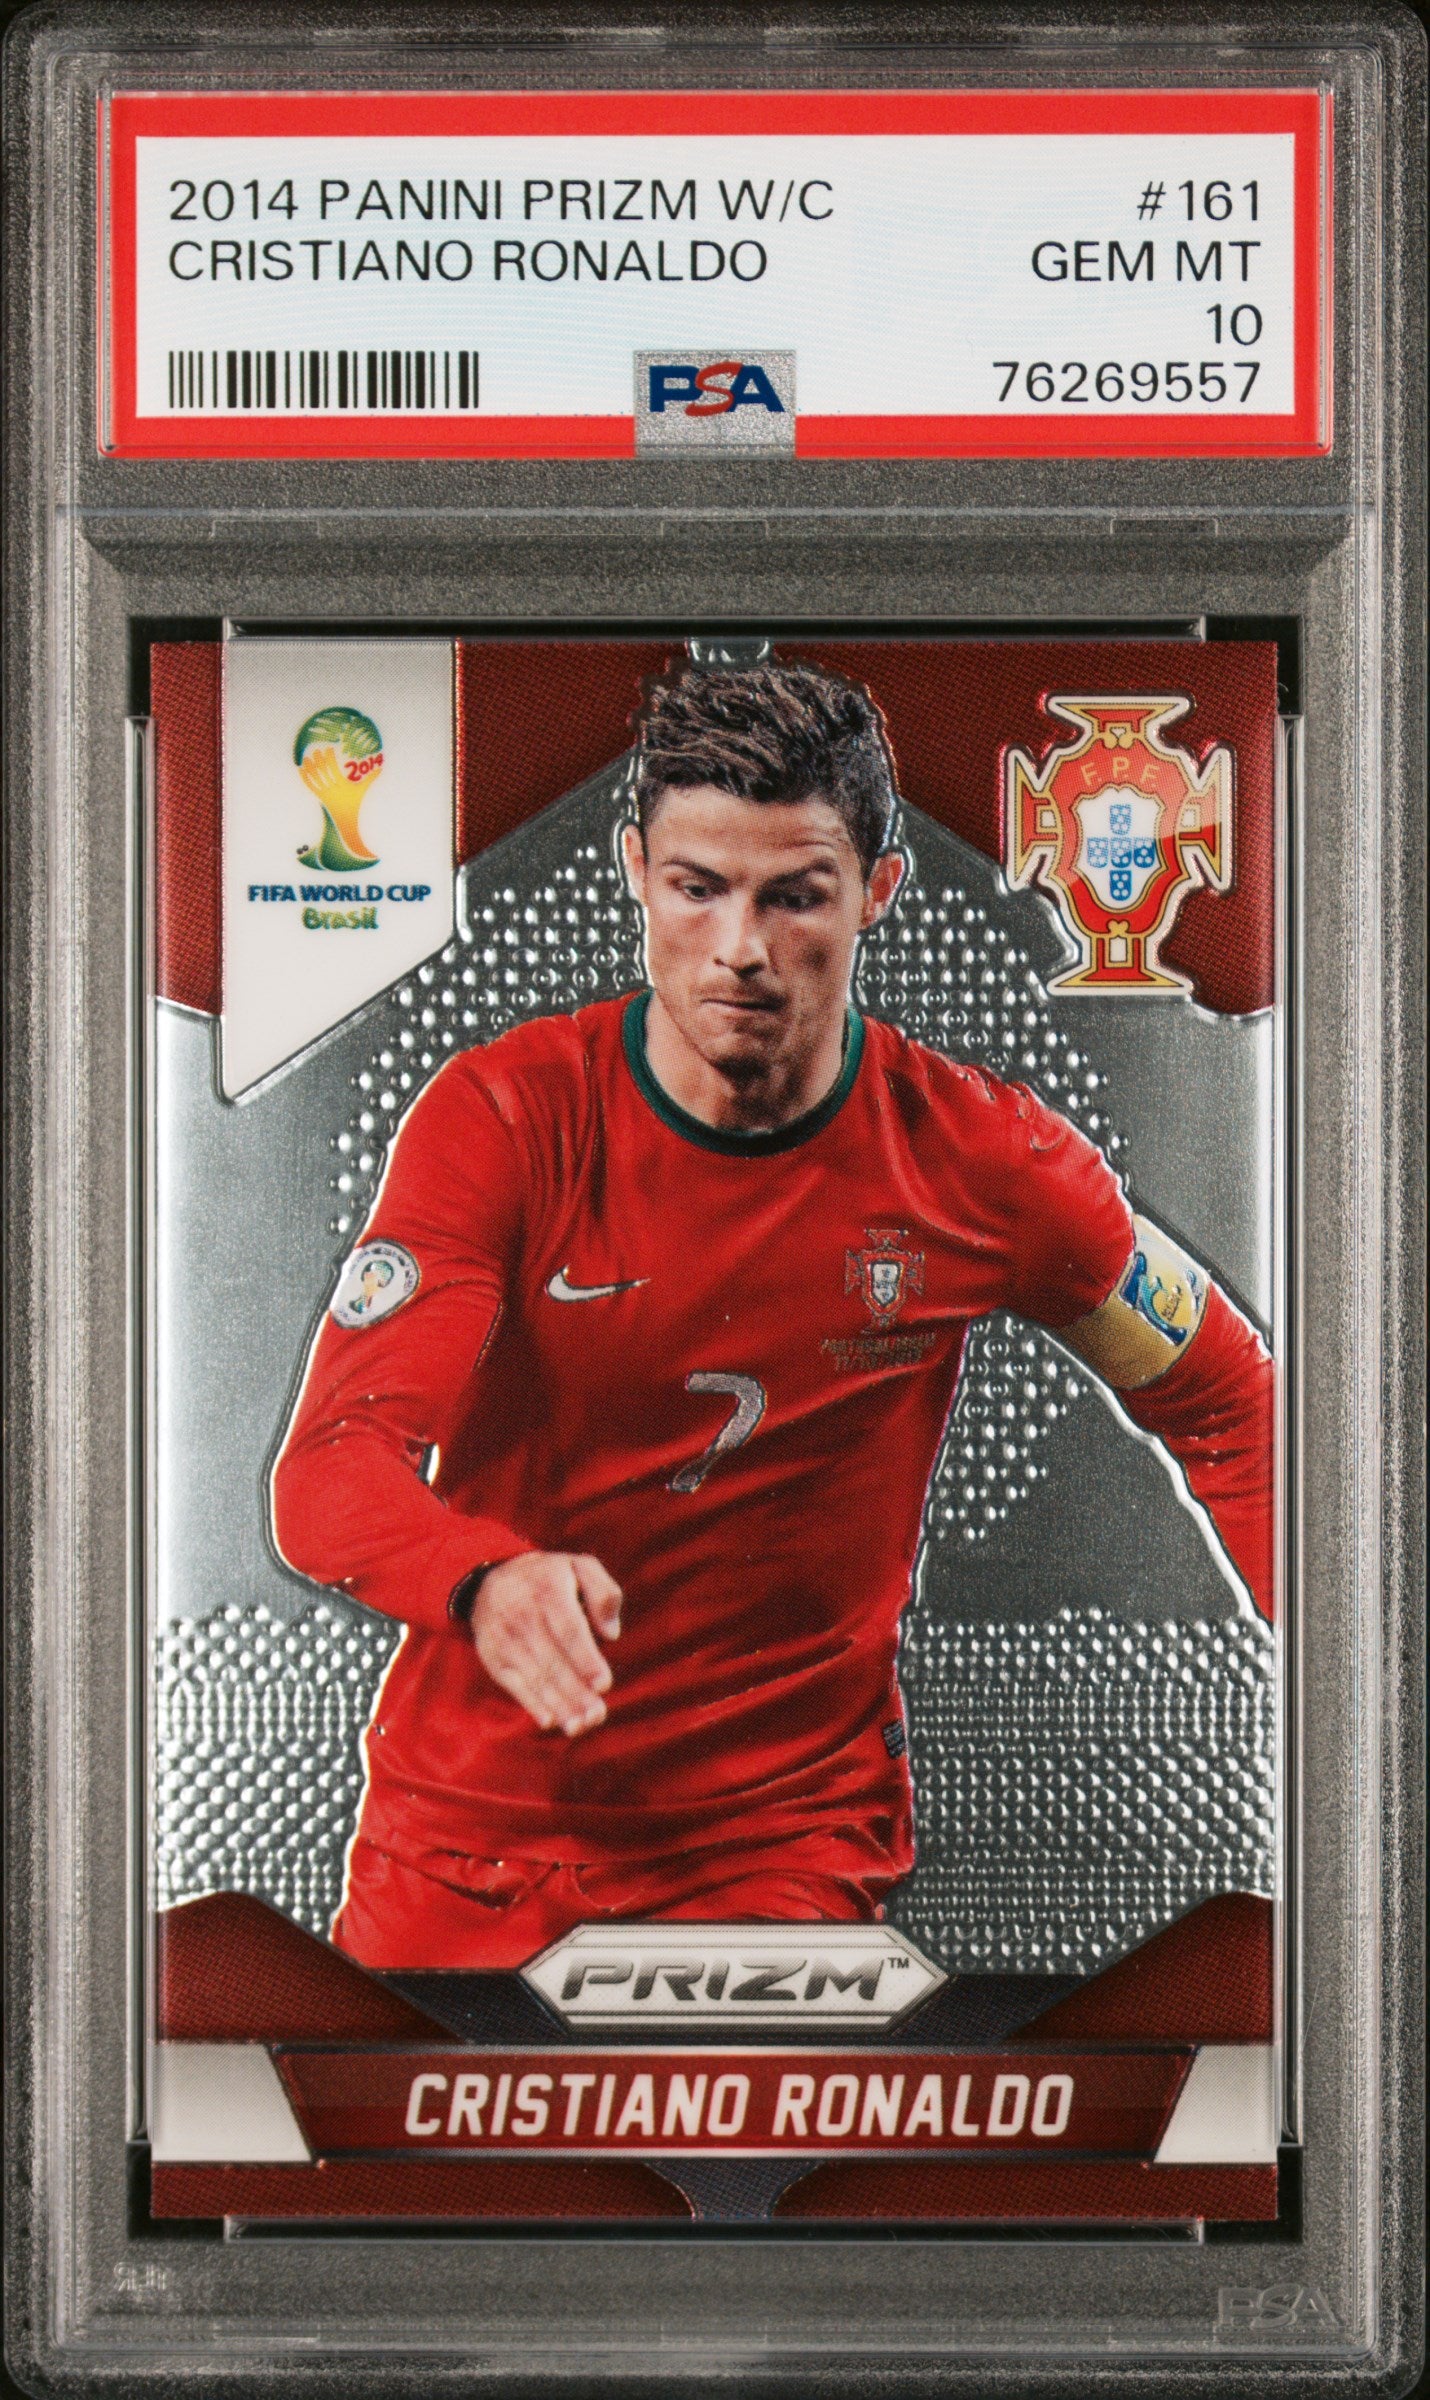 Cristiano Ronaldo 2014 Panini Prizm World Cup Soccer Card #161 Graded PSA 10-Powers Sports Memorabilia